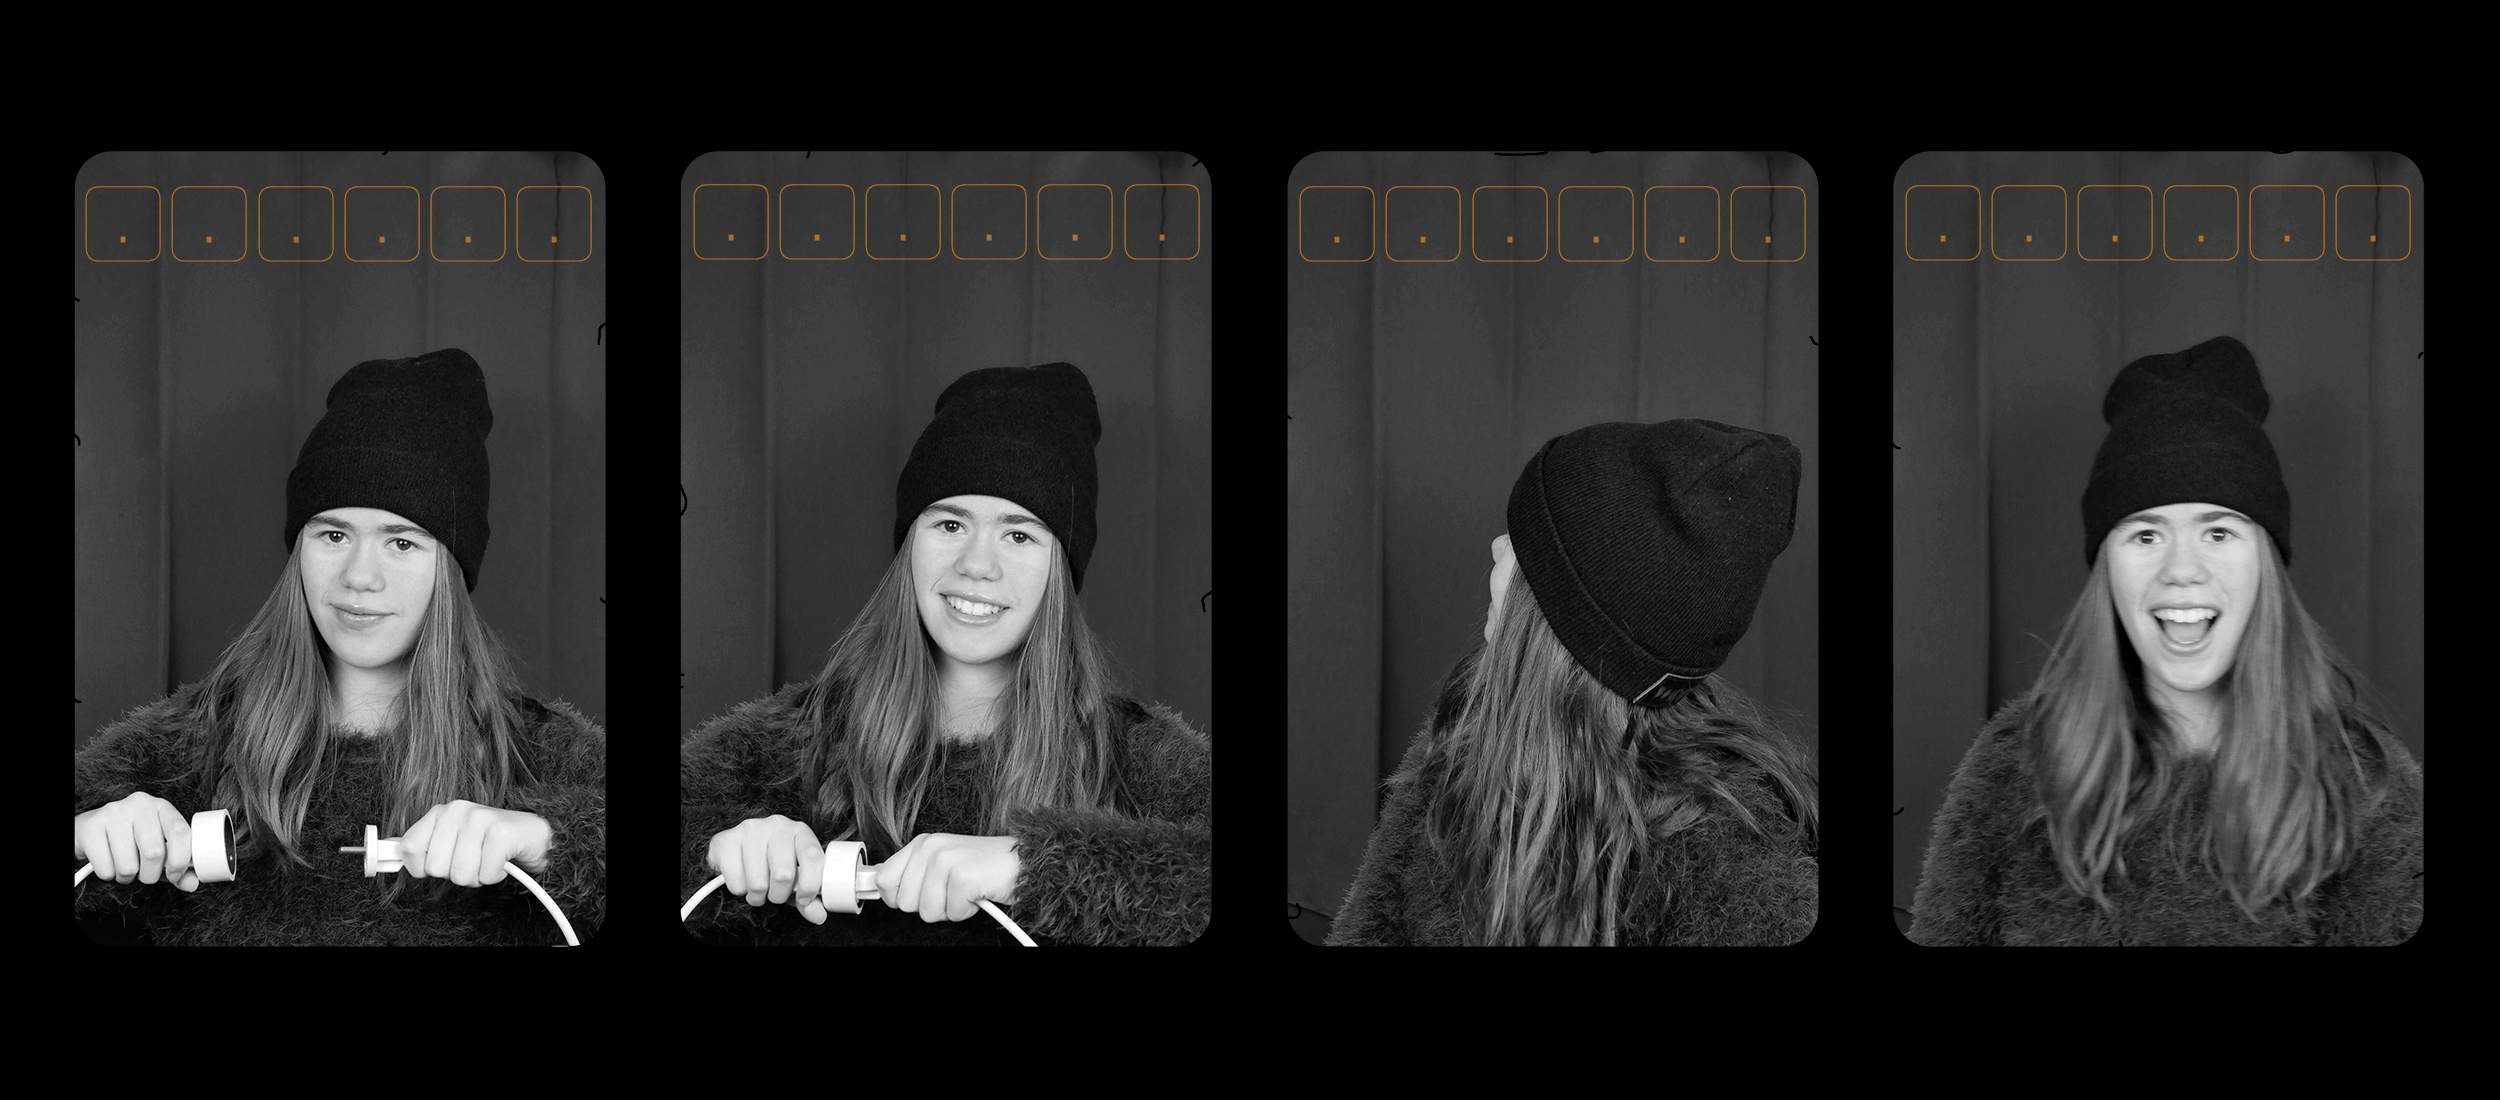 Art Digital animée, 4 photos d'une adolescente dans un Photomaton s'animent avec des néons oranges qui s'allument pour afficher l'adresse de mon site web "L’Oeil Orange .fr"